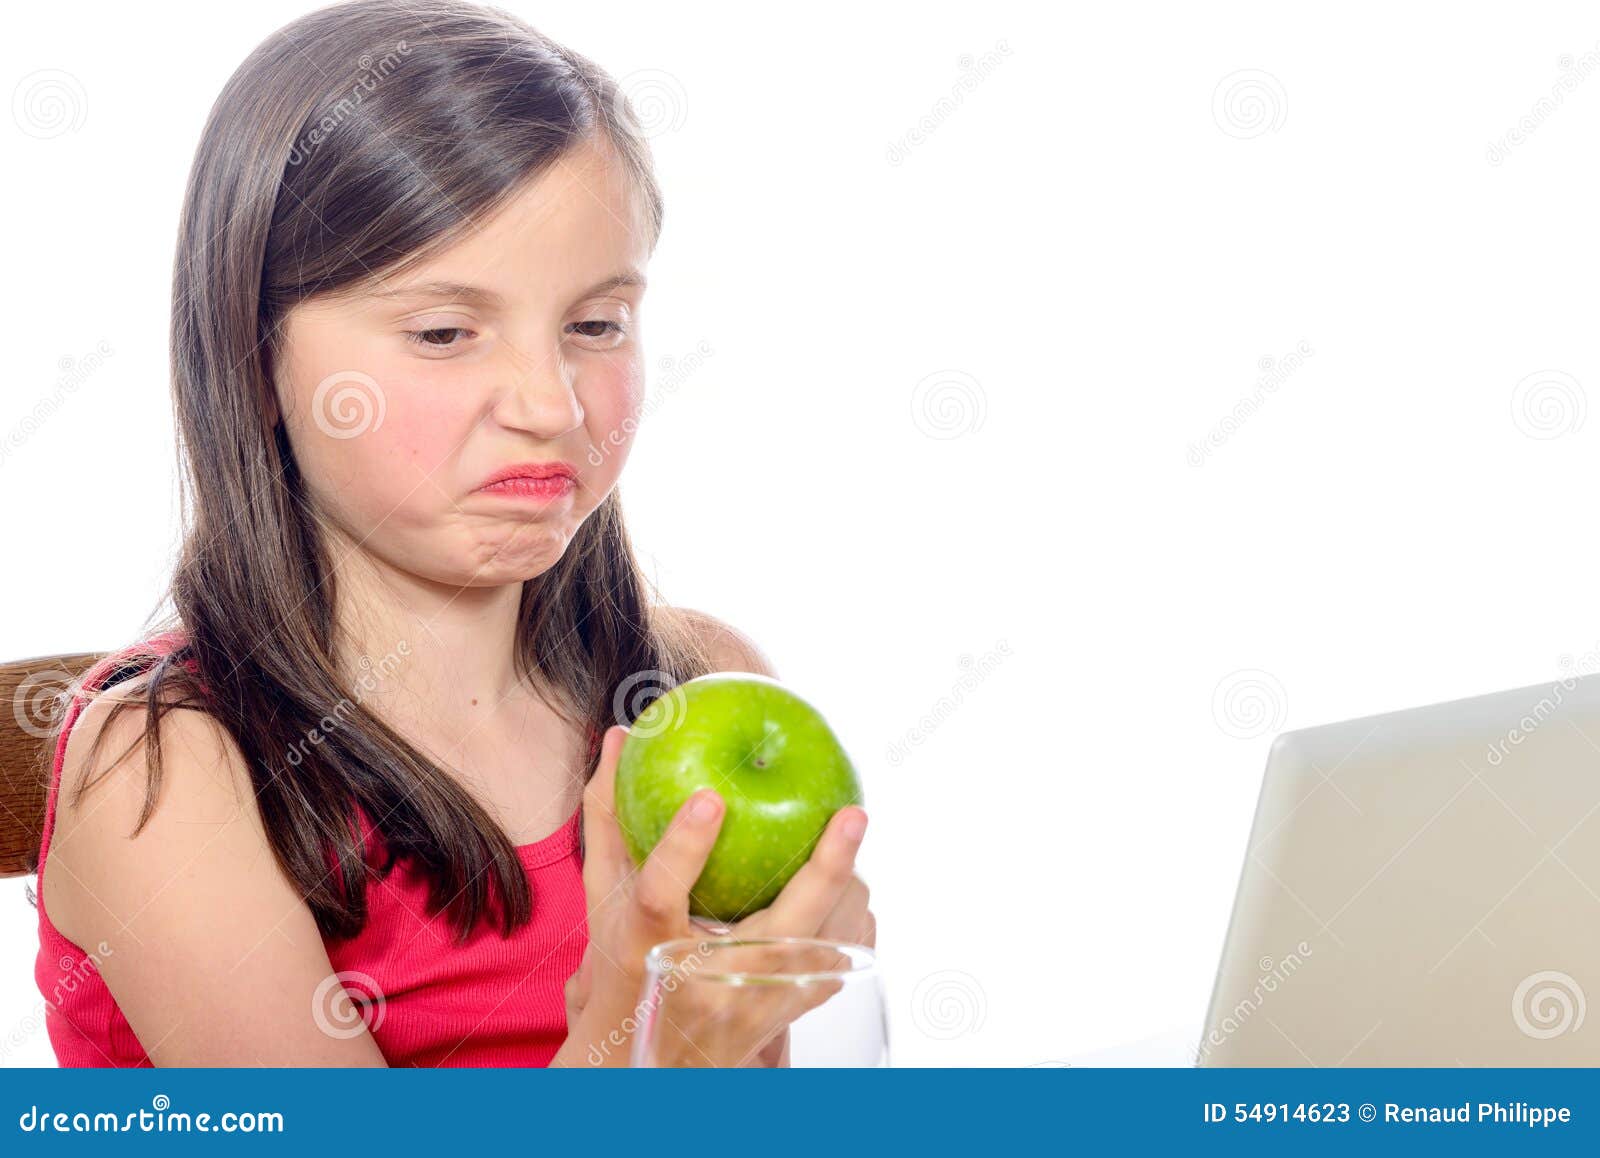 I don t like apple. Девочка с яблоками. Девочка любит яблоки. Не любит яблоки. Девушка с яблоками картинки.